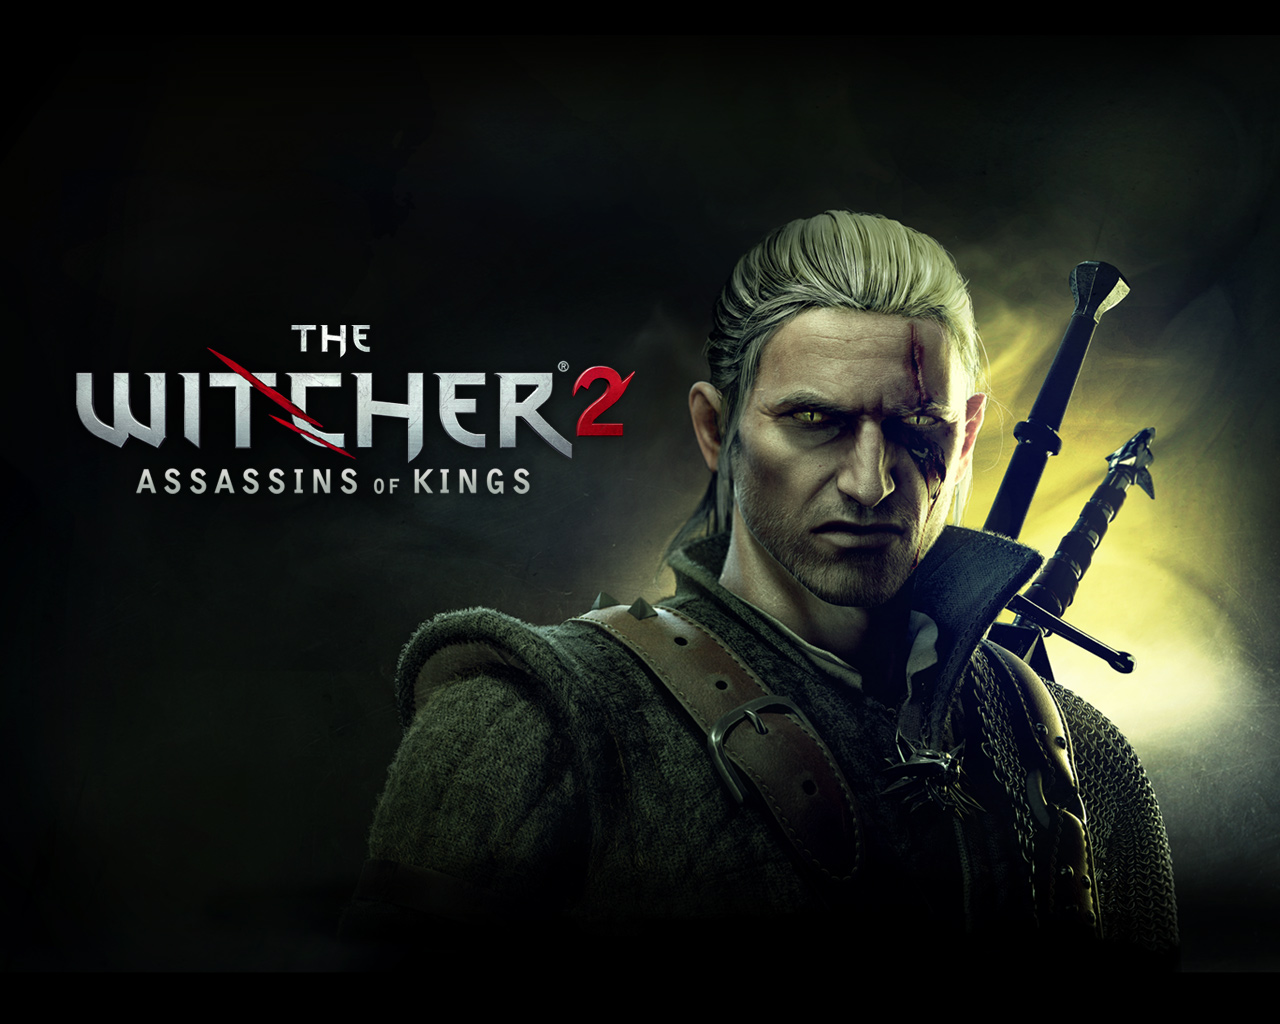 CD Projekt explica o motivo de The Witcher 2 não ter sido lançado para o PlayStation  3